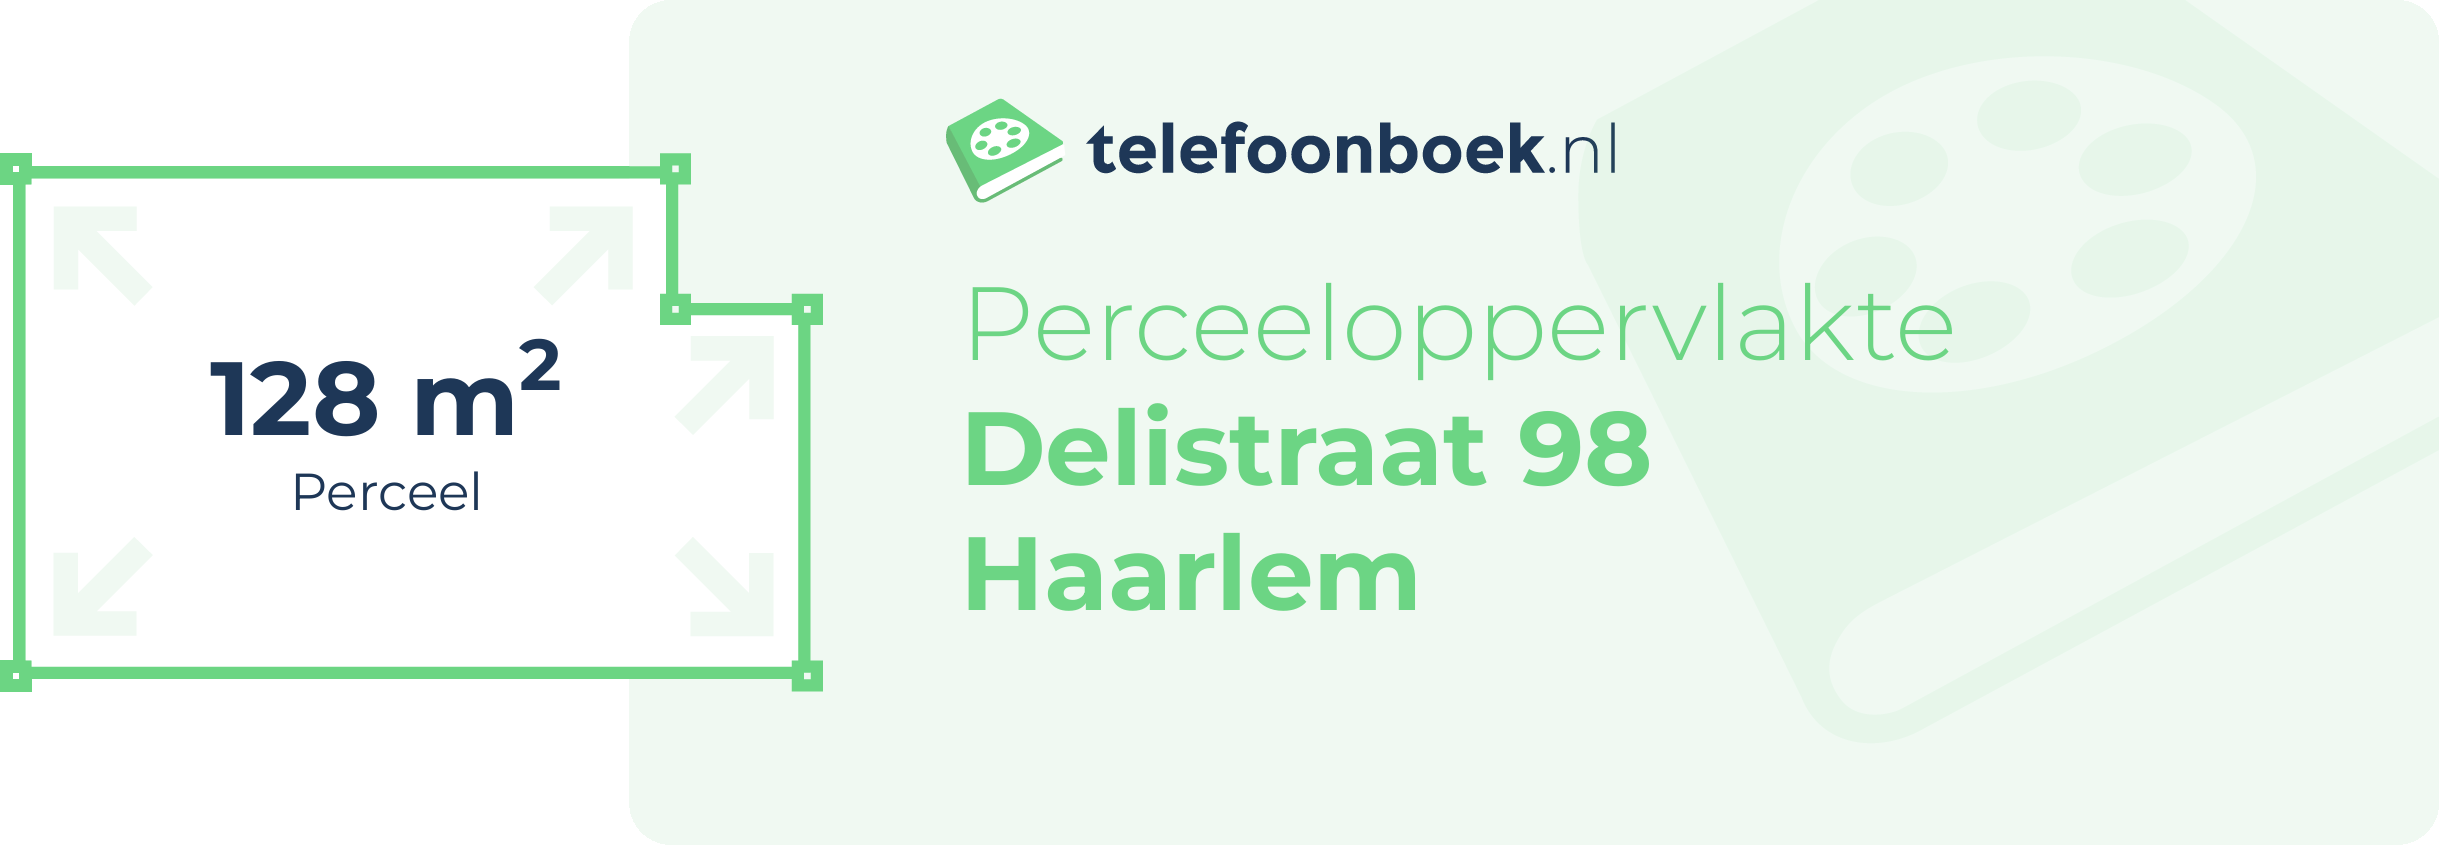 Perceeloppervlakte Delistraat 98 Haarlem